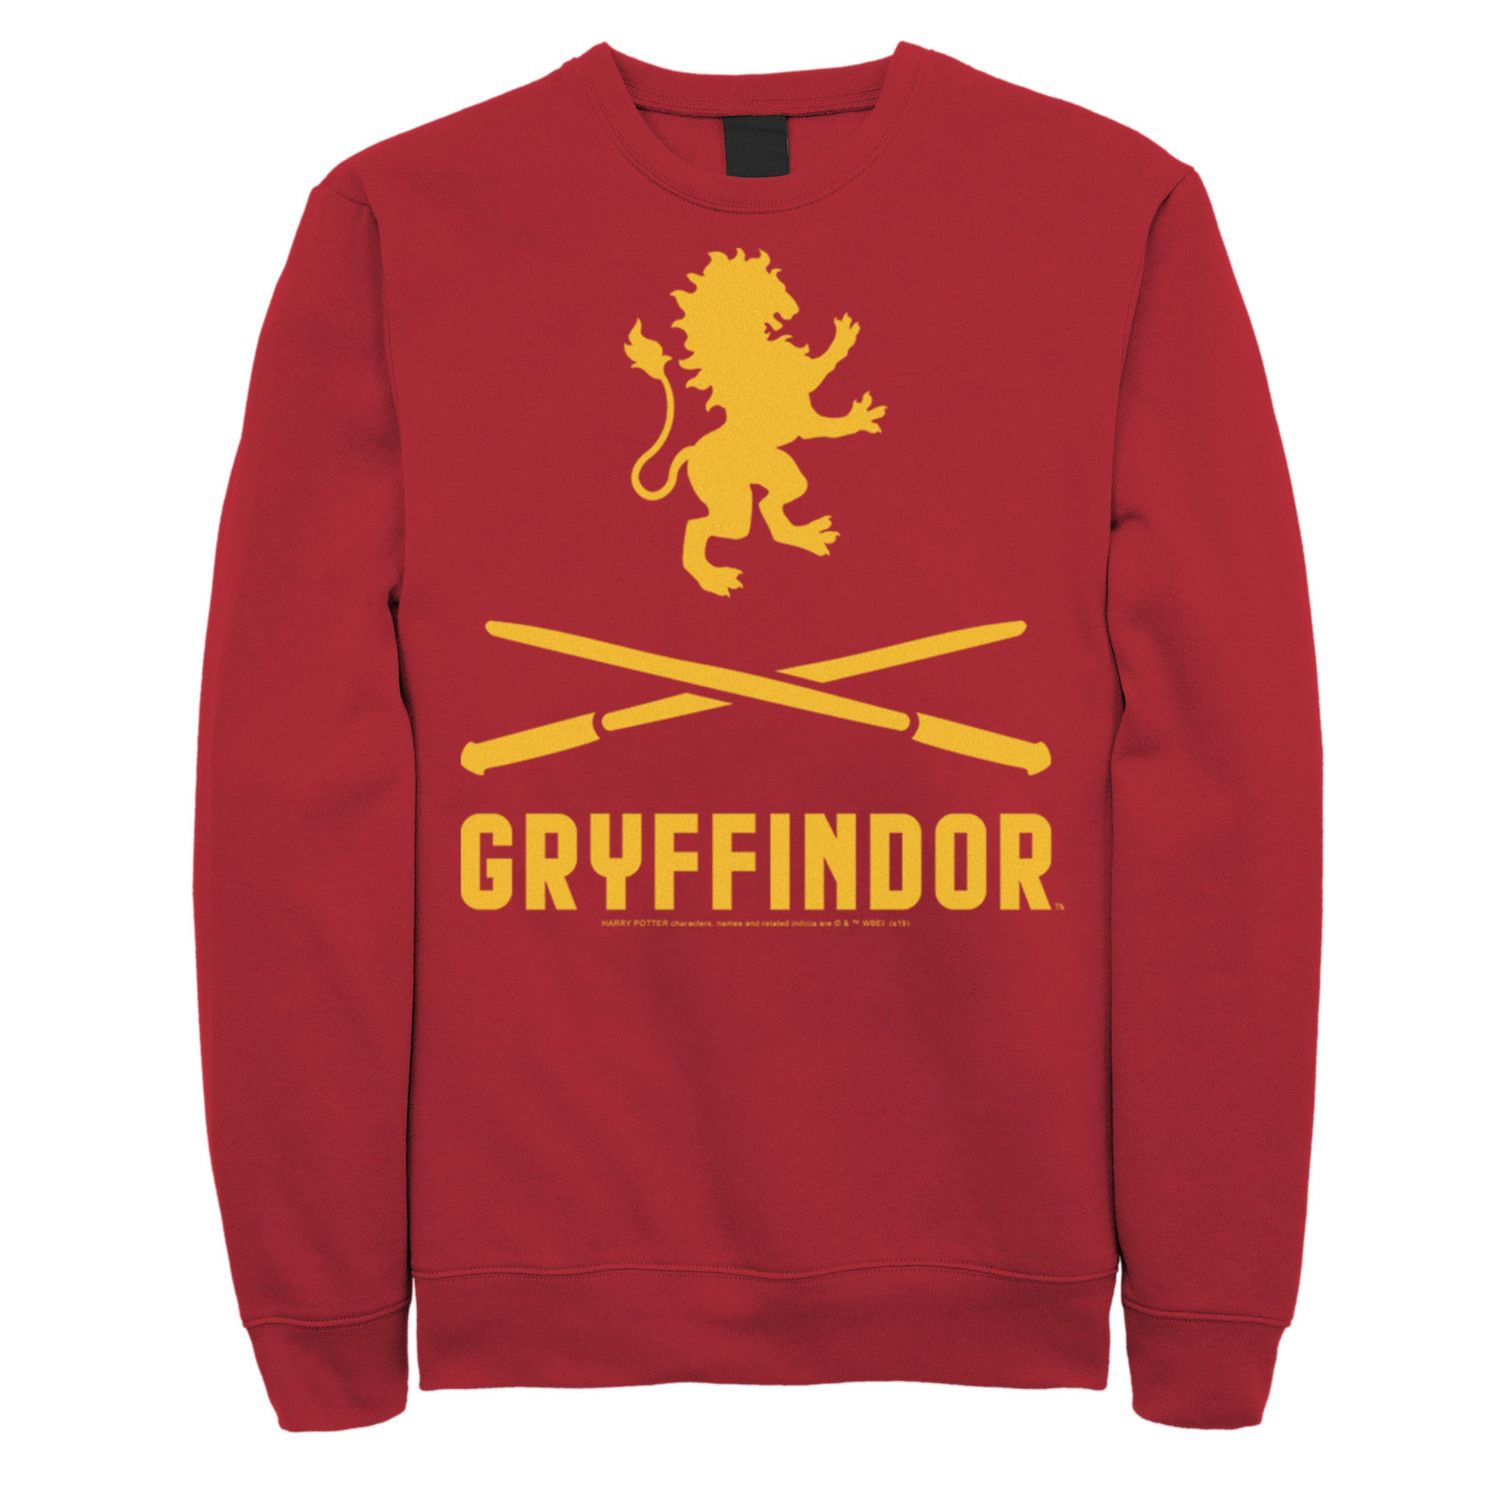 Image for Harry Potter Men's Gryffindor Crossed Wands Logo Sweatshirt at Kohl's.